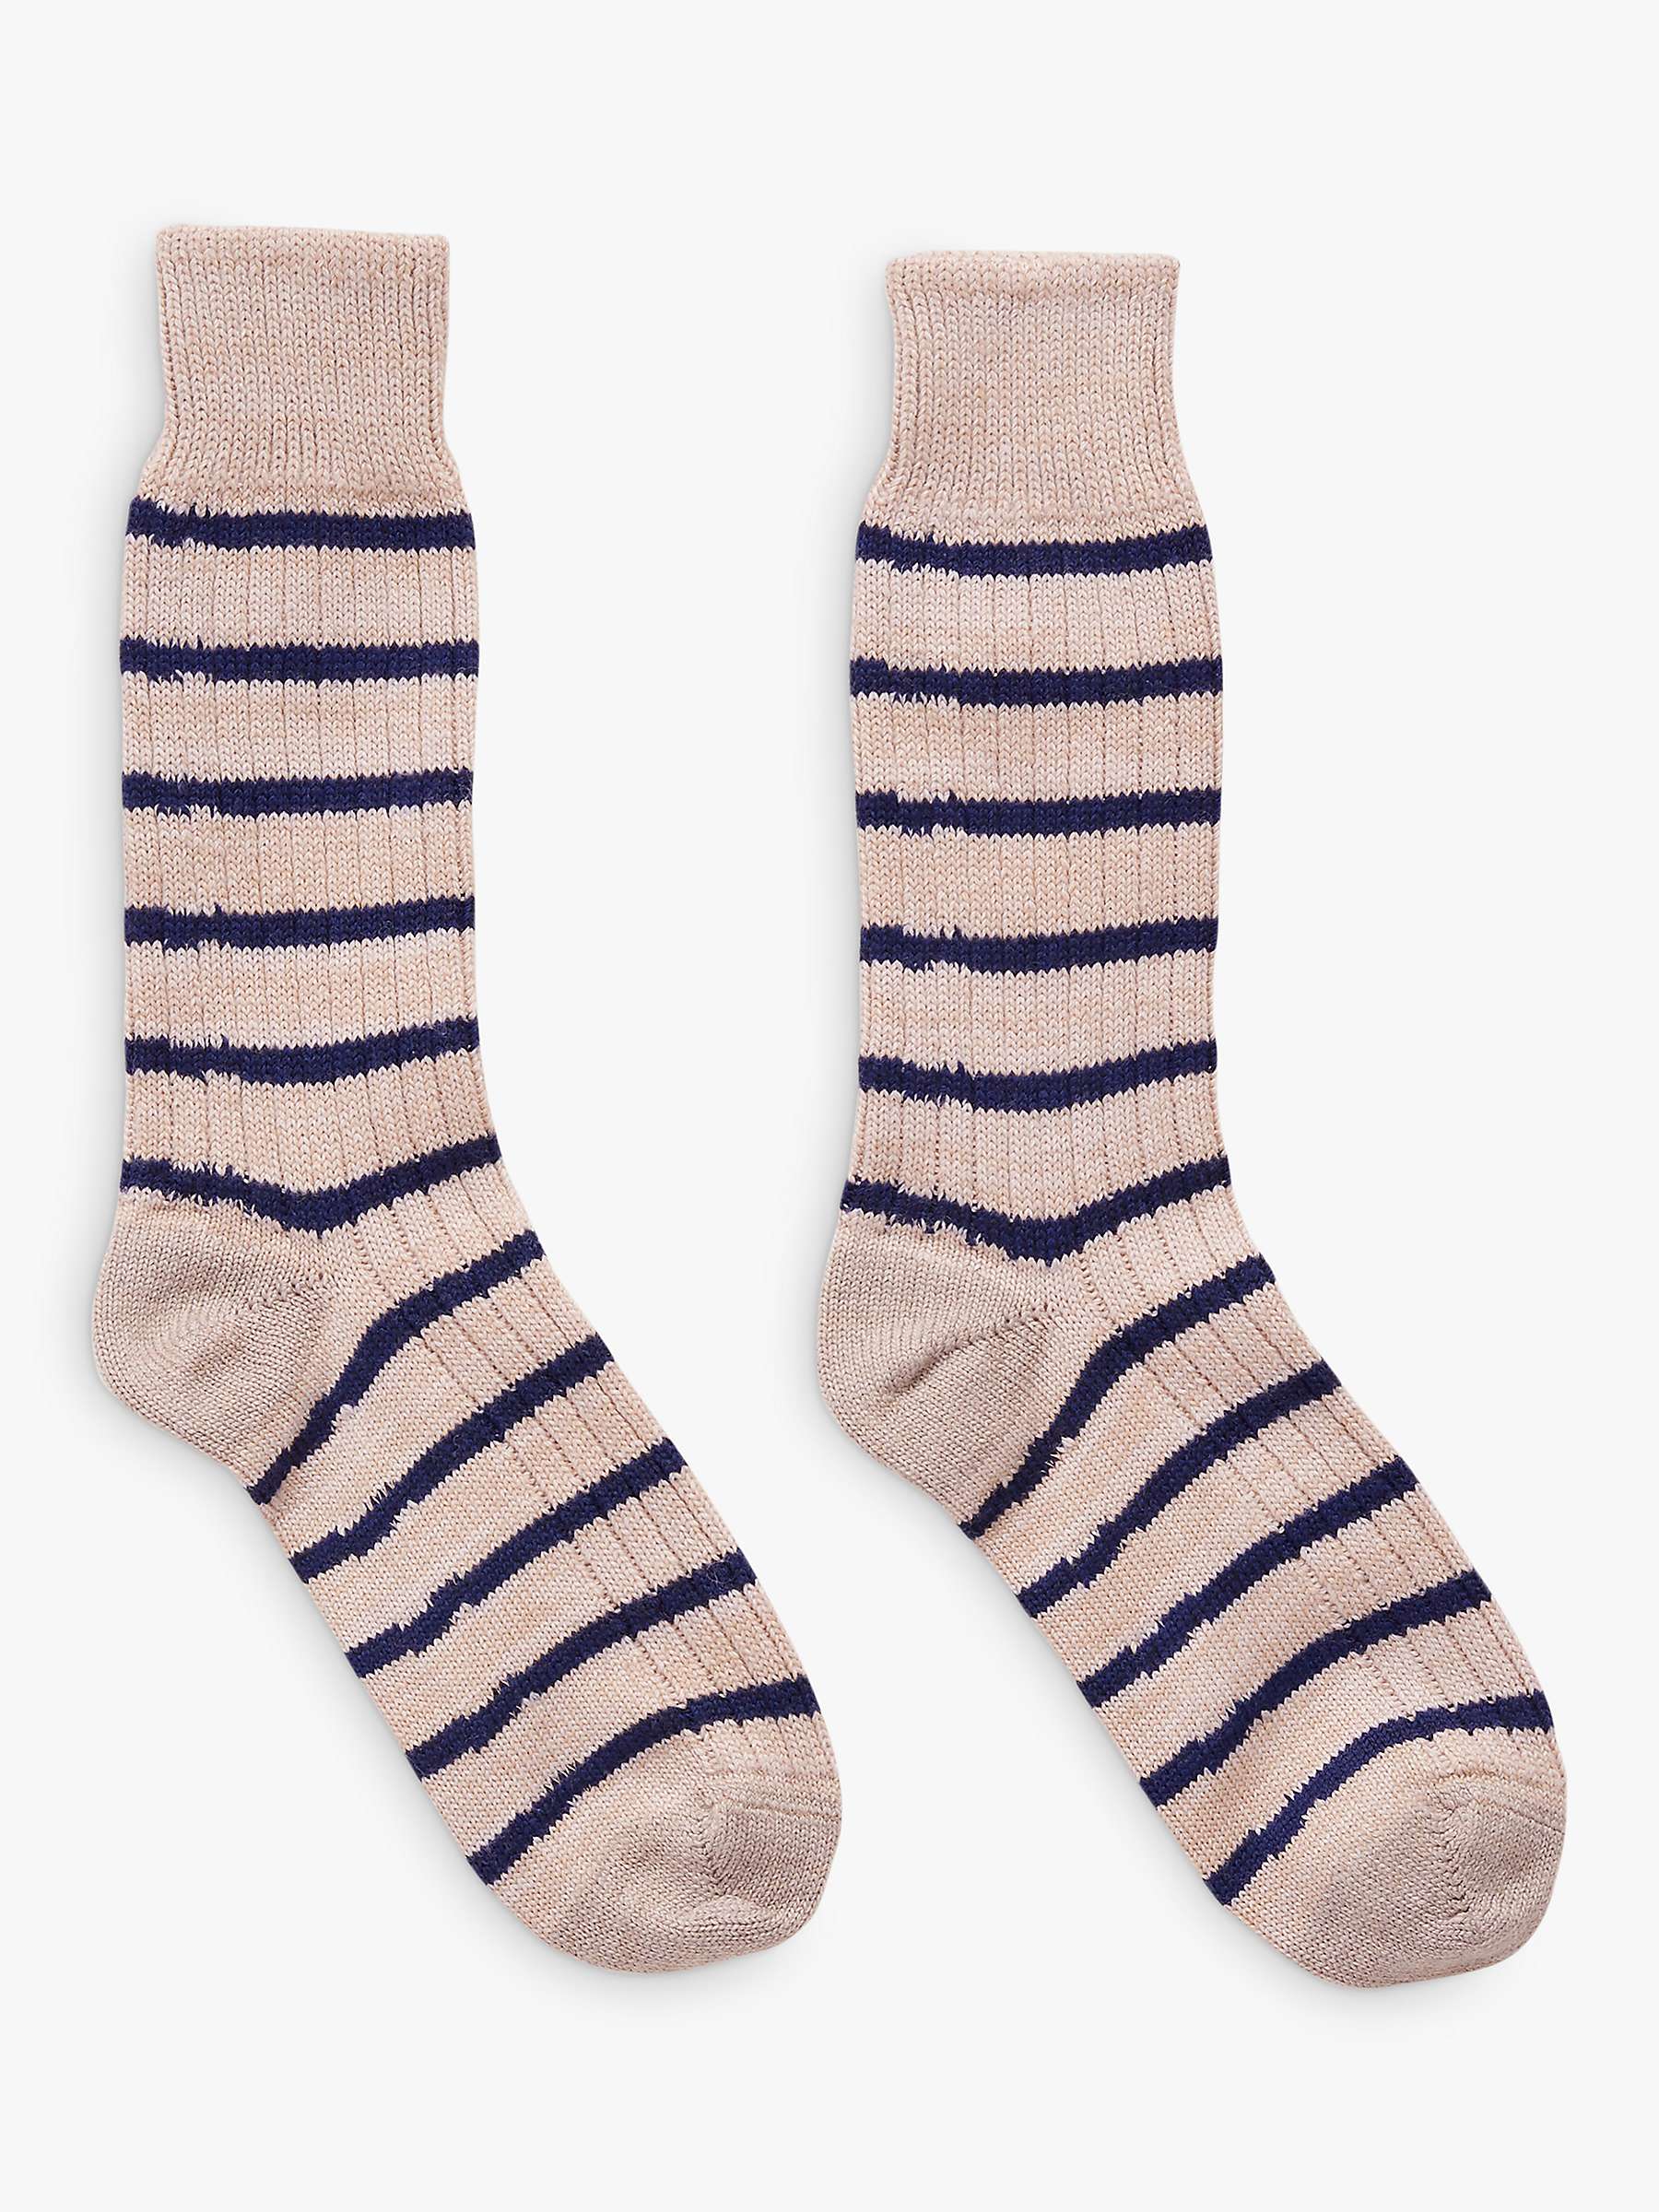 Buy Celtic & Co. Striped Merino Wool Blend Socks Online at johnlewis.com